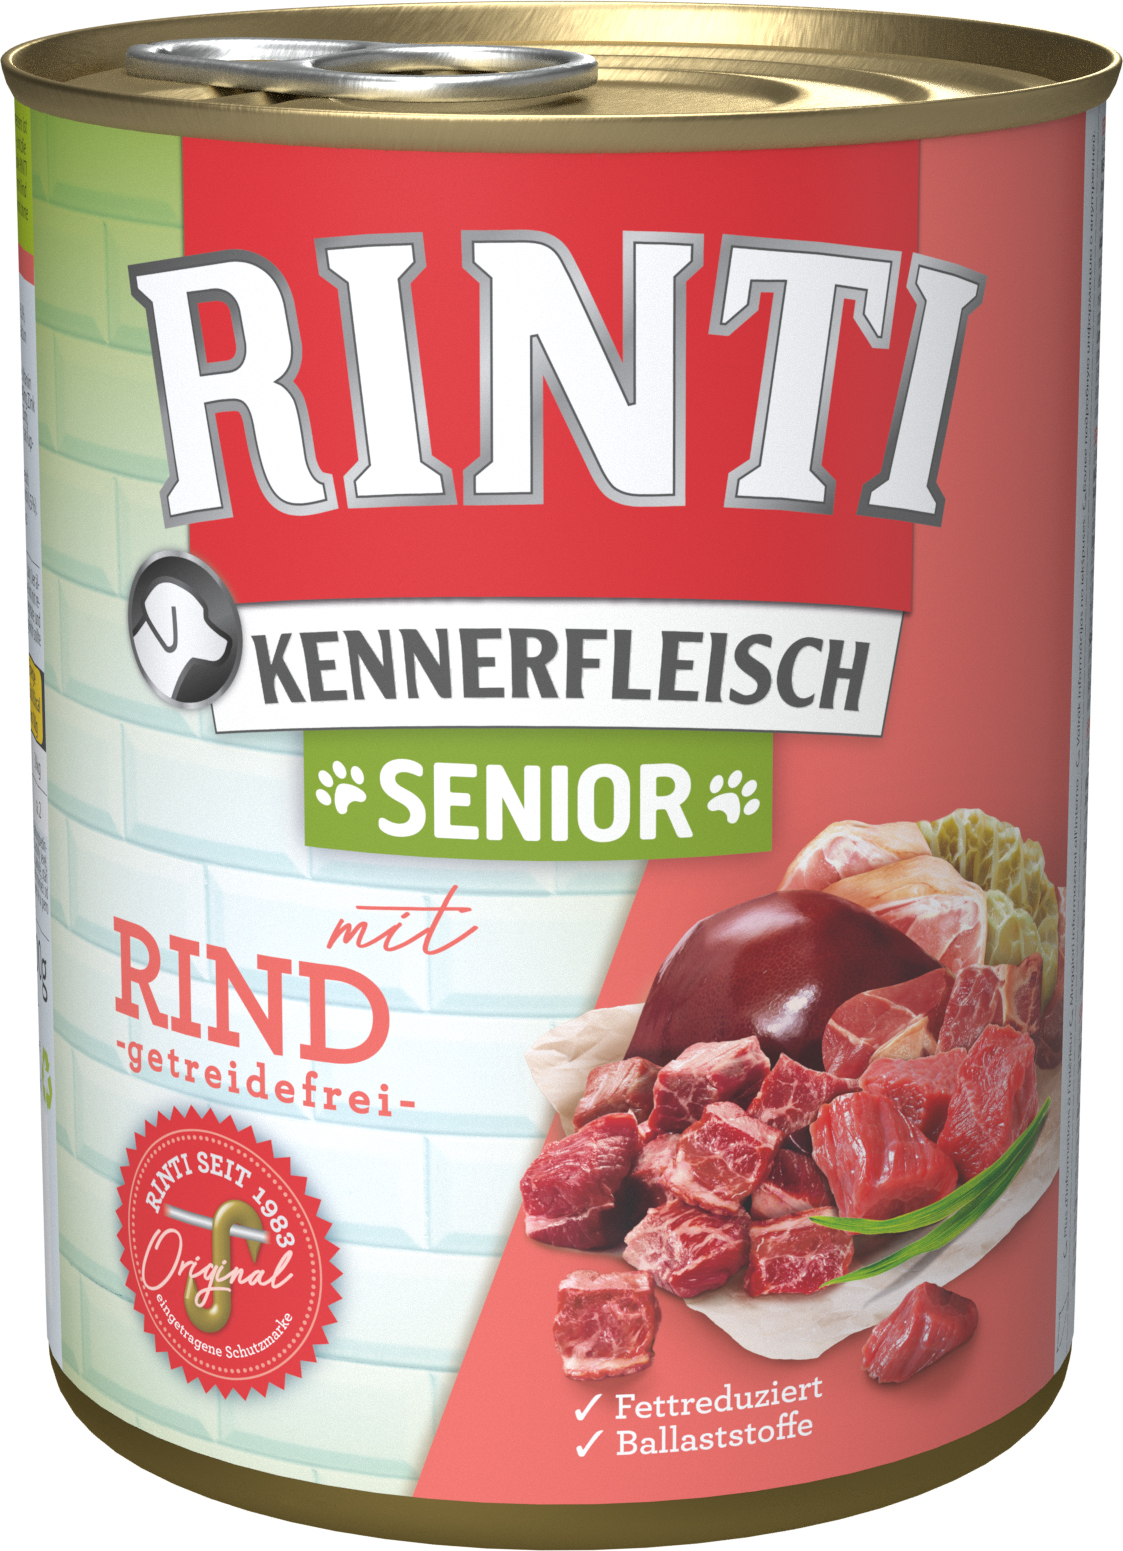 Rinti Kennerfleisch Senior Rind 800g